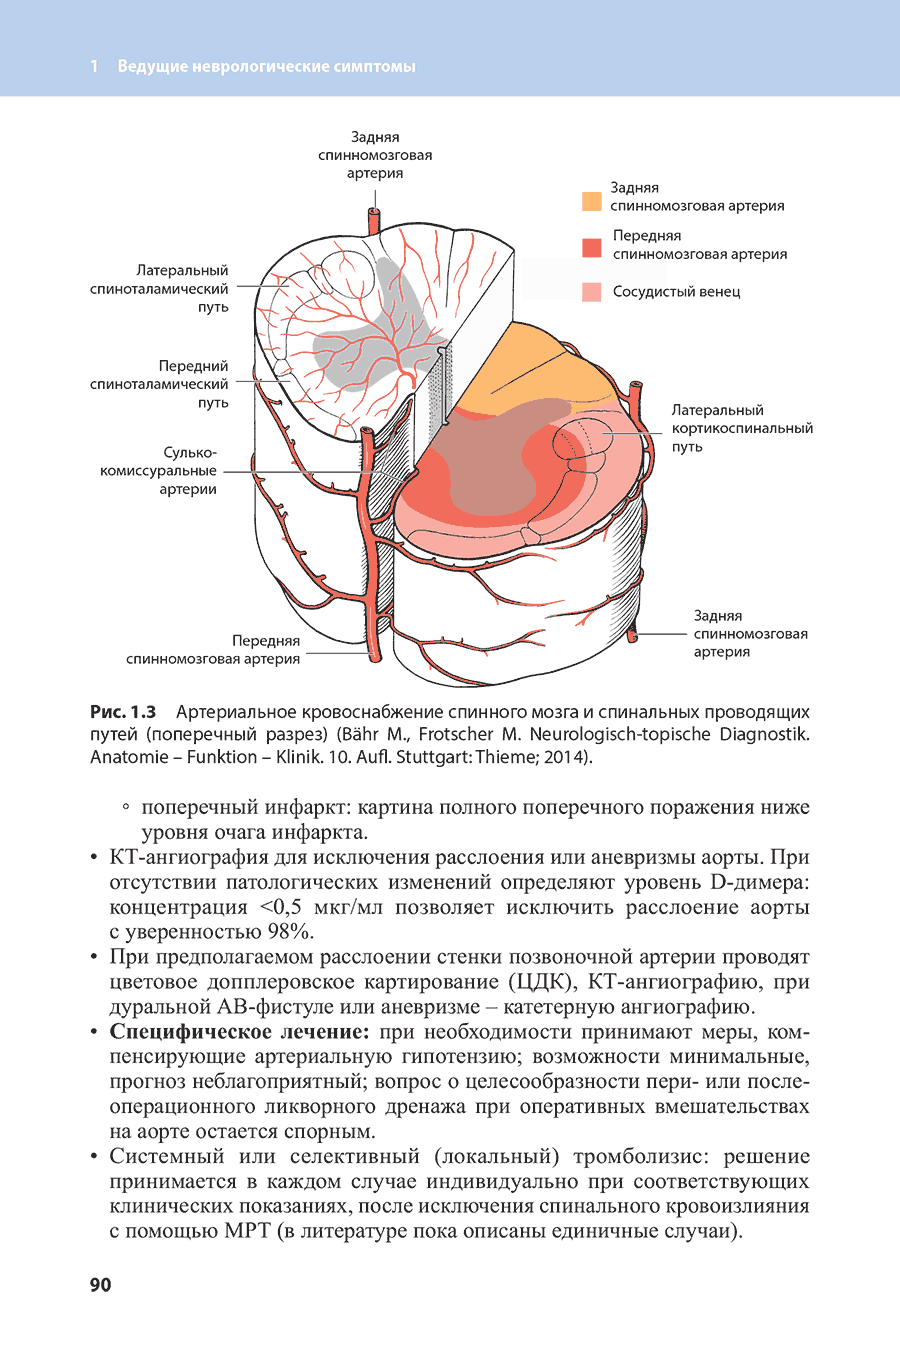 Рис. 1.3 Артериальное кровоснабжение спинного мозга и спинальных проводящих путей (поперечный разрез)